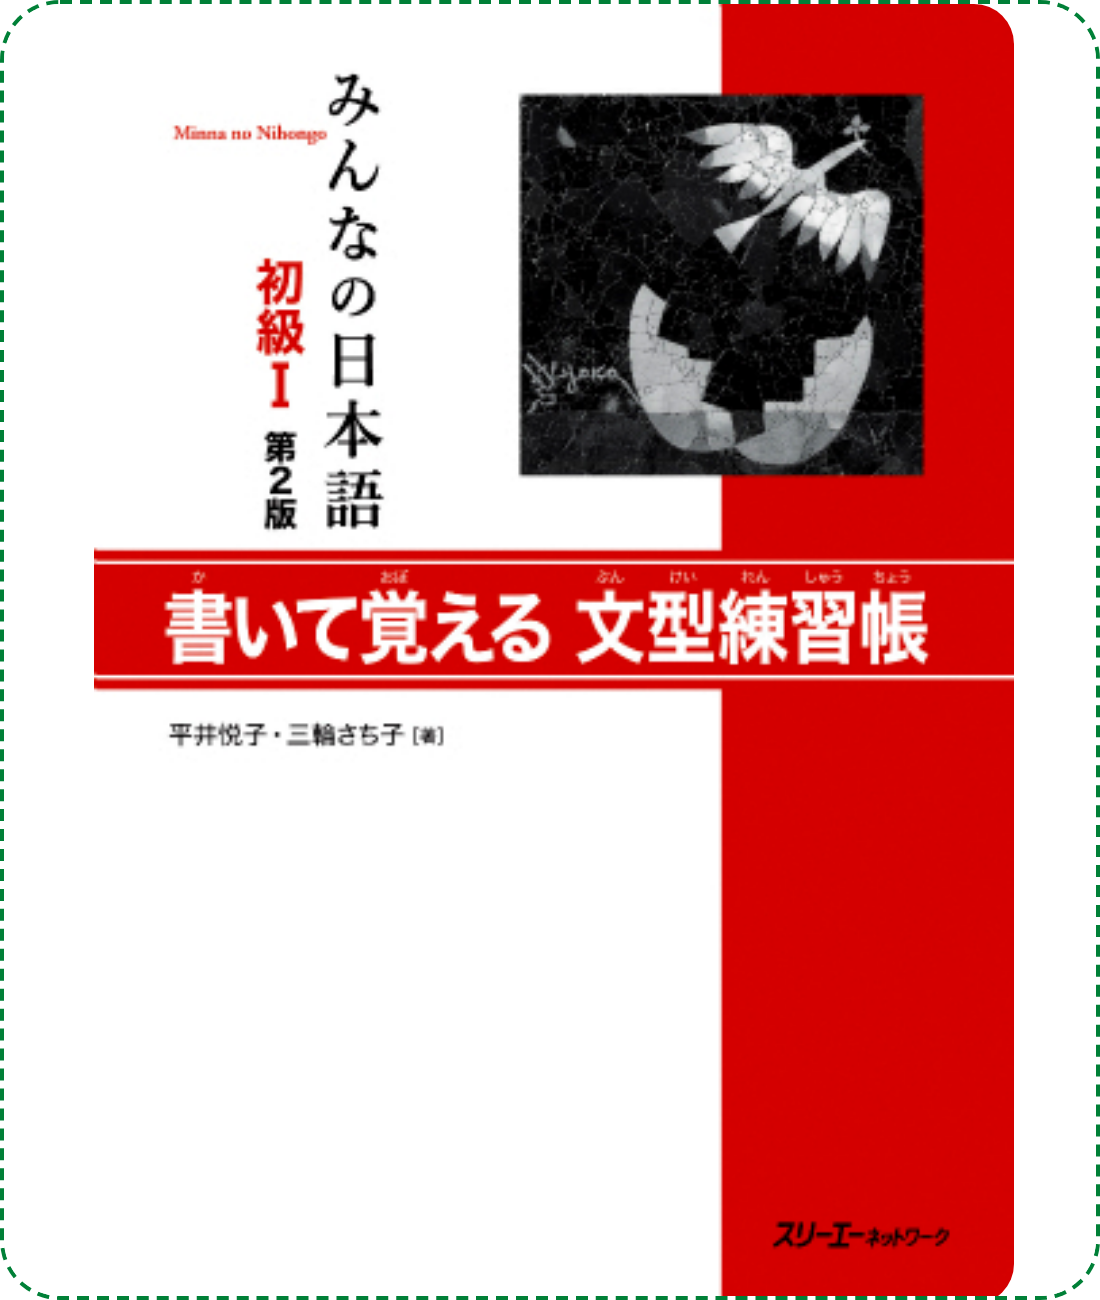 Giáo trình Minano Nihongo 1 - Quyển Bài Tập Bunkei Renshuuchou